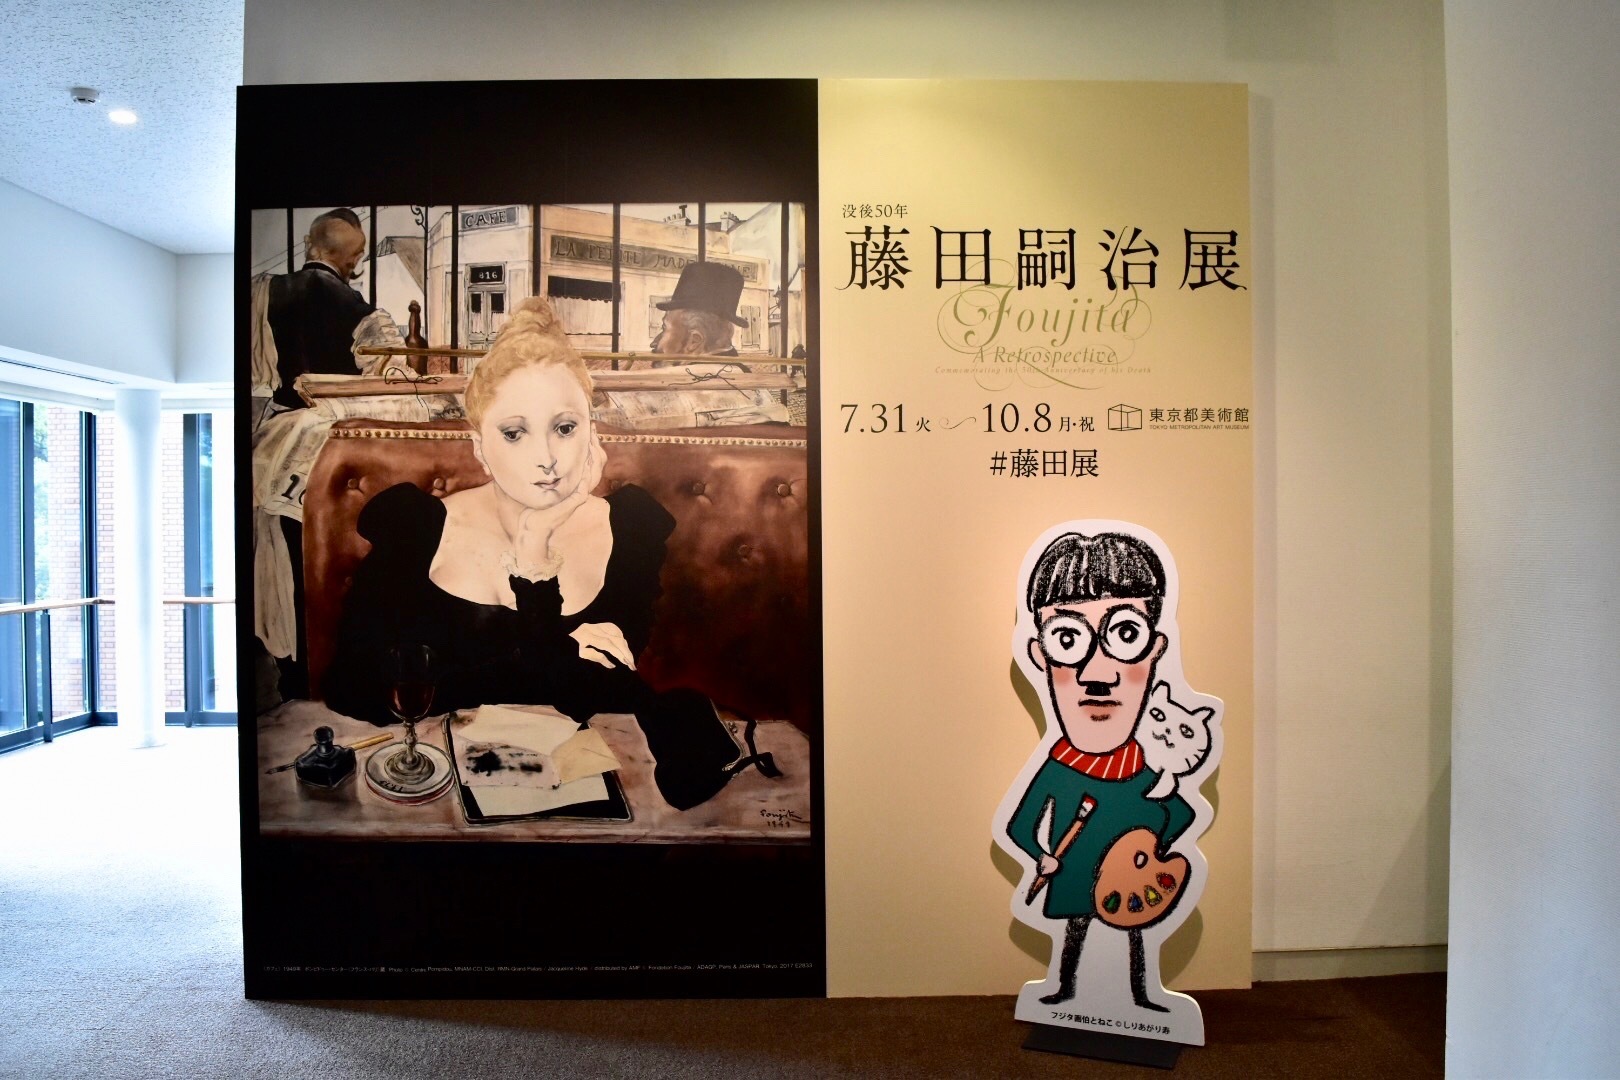 展覧会メインビジュアルとしりあがり寿さんの「フジタ画伯とねこ」のパネル